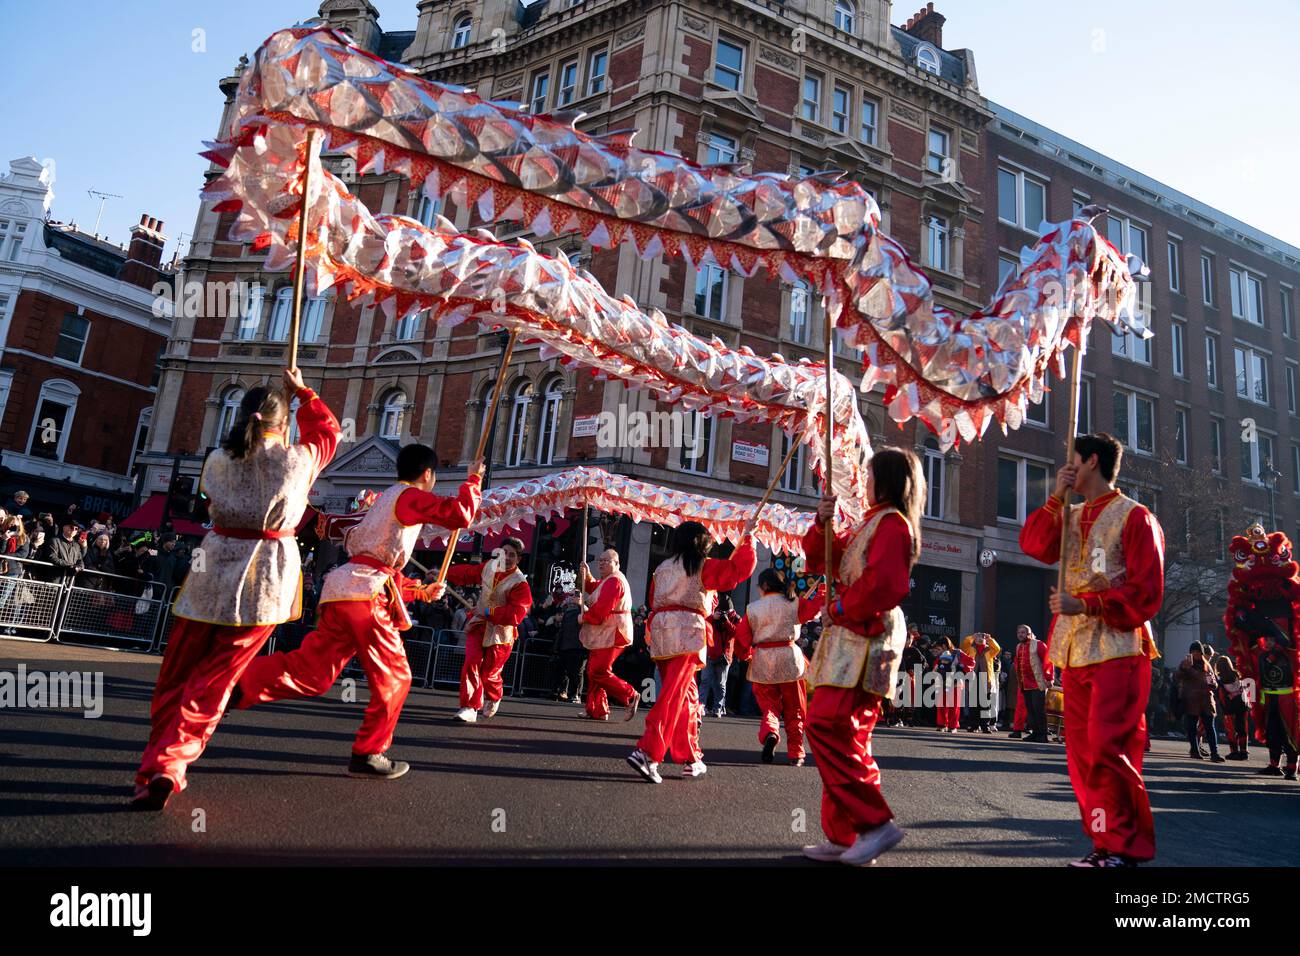 Artisti che partecipano a una sfilata di costumi, balli leoni e carri, durante le celebrazioni del Capodanno cinese a Londra, in occasione dell'anno del coniglio. Data immagine: Domenica 22 gennaio 2023. Foto Stock